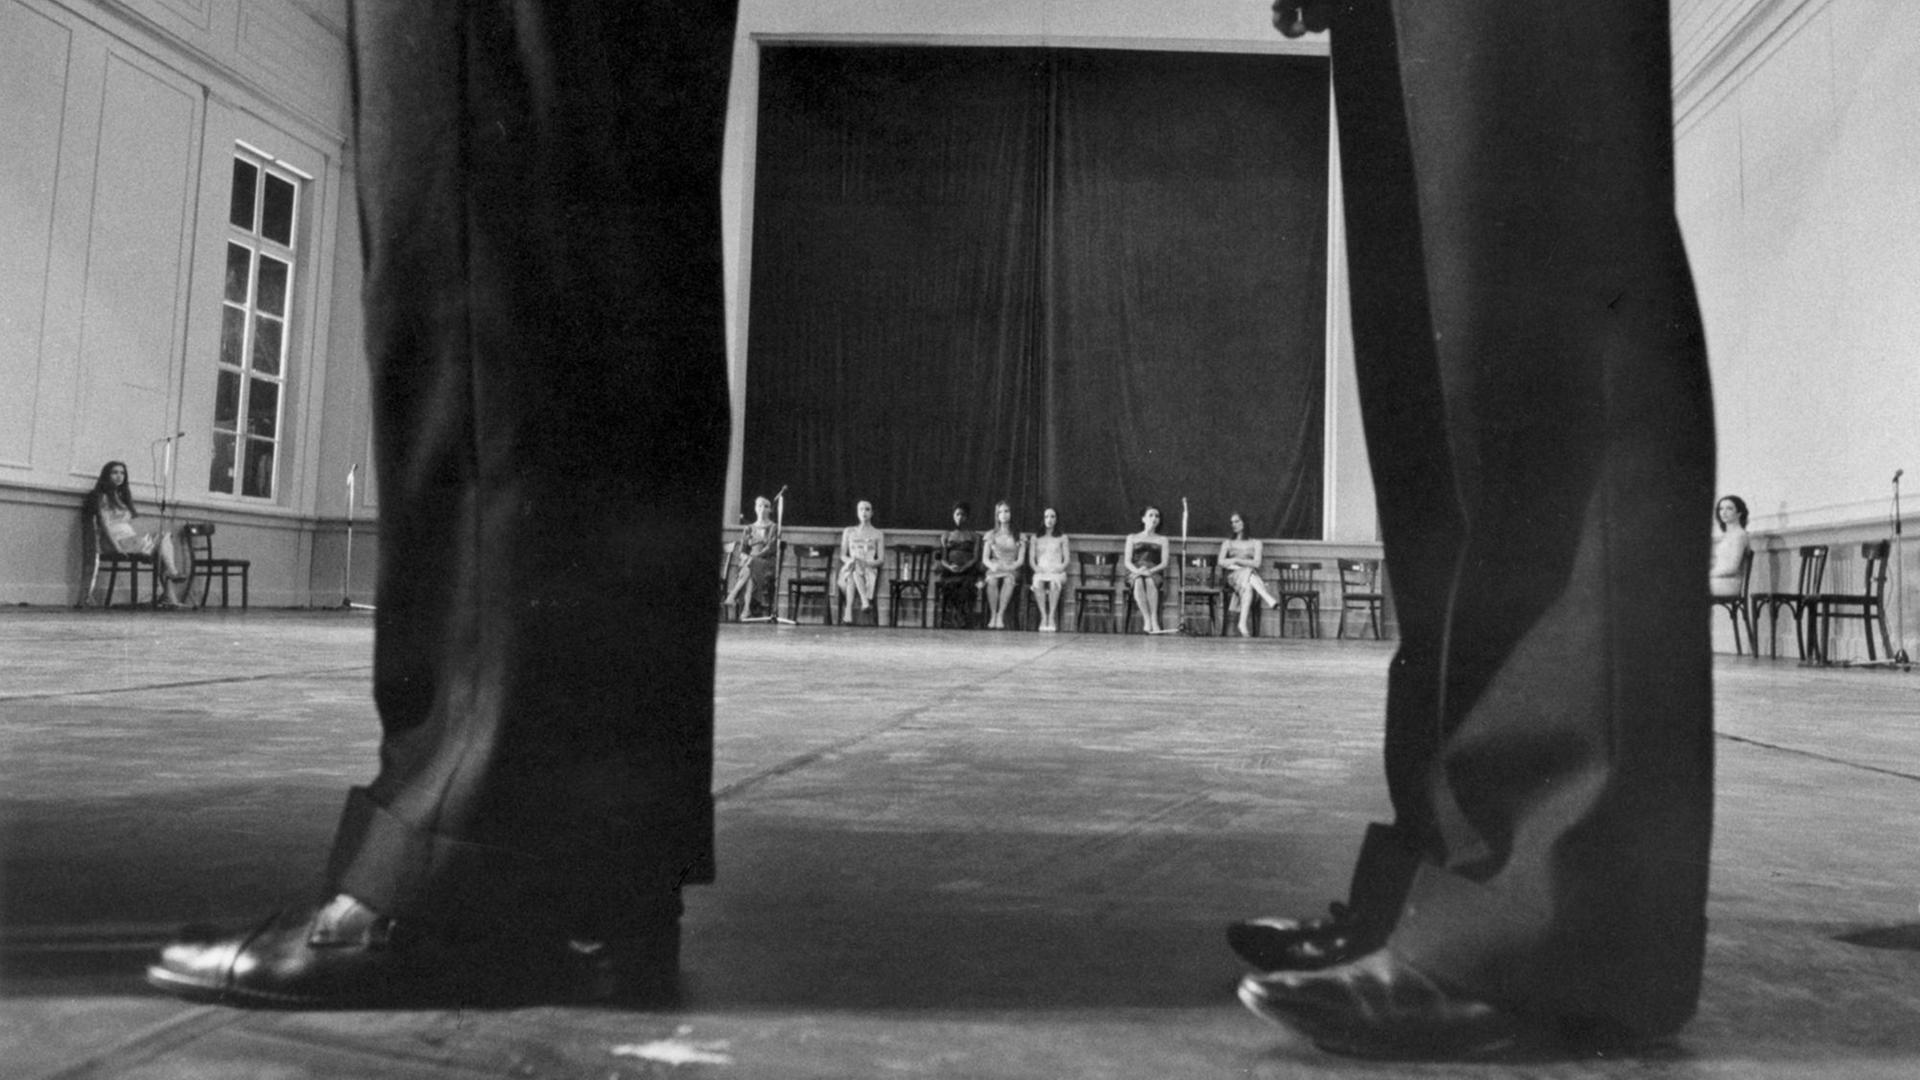 Im Vordergrund zwei Paar Beine in schwarzen Hosen. Blick durch die Beine nach hinten, wo mehrere Frauen auf Stühlen sitzen. Schwarzweißfoto.